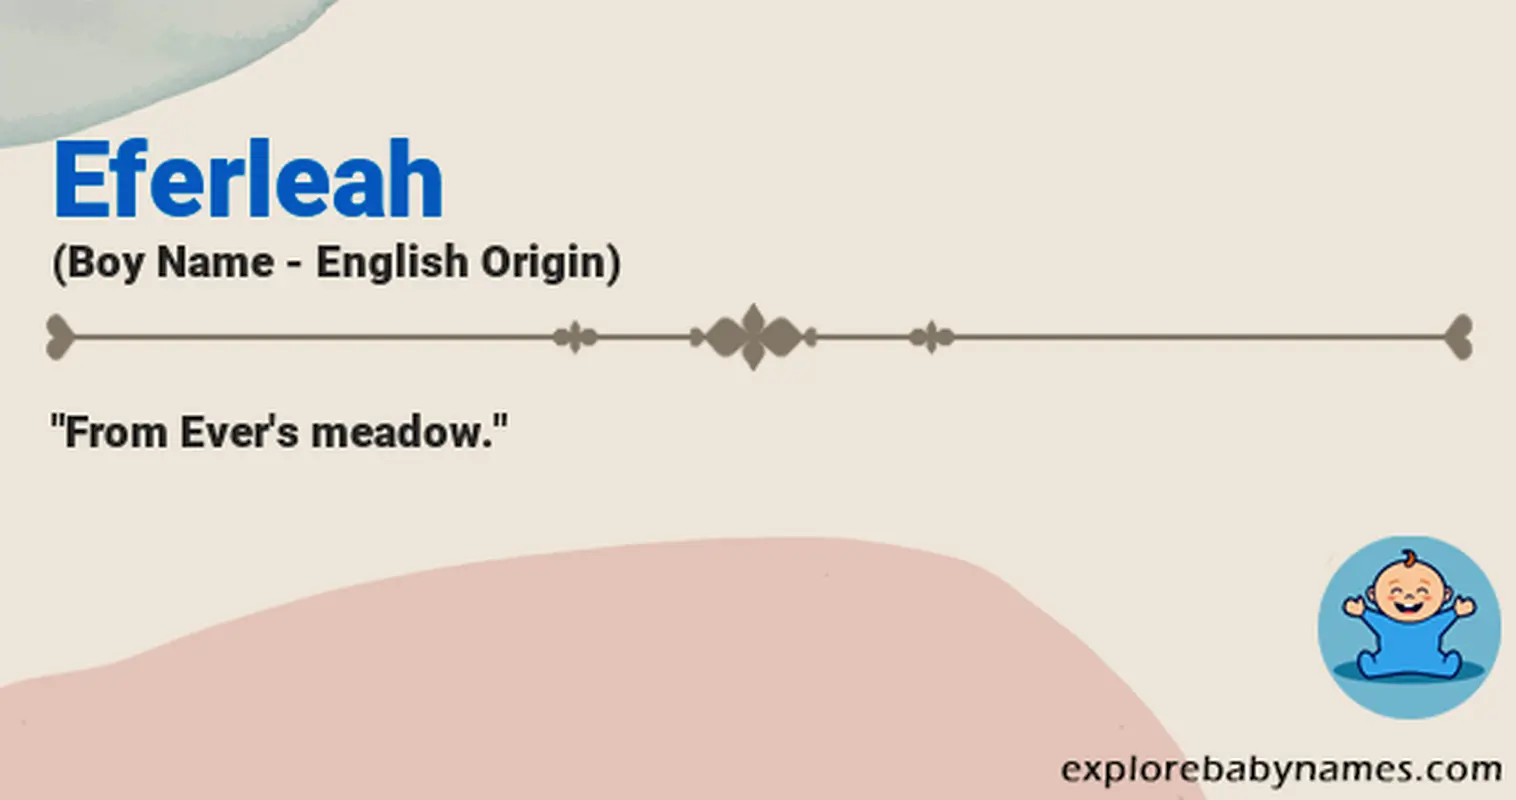 Meaning of Eferleah